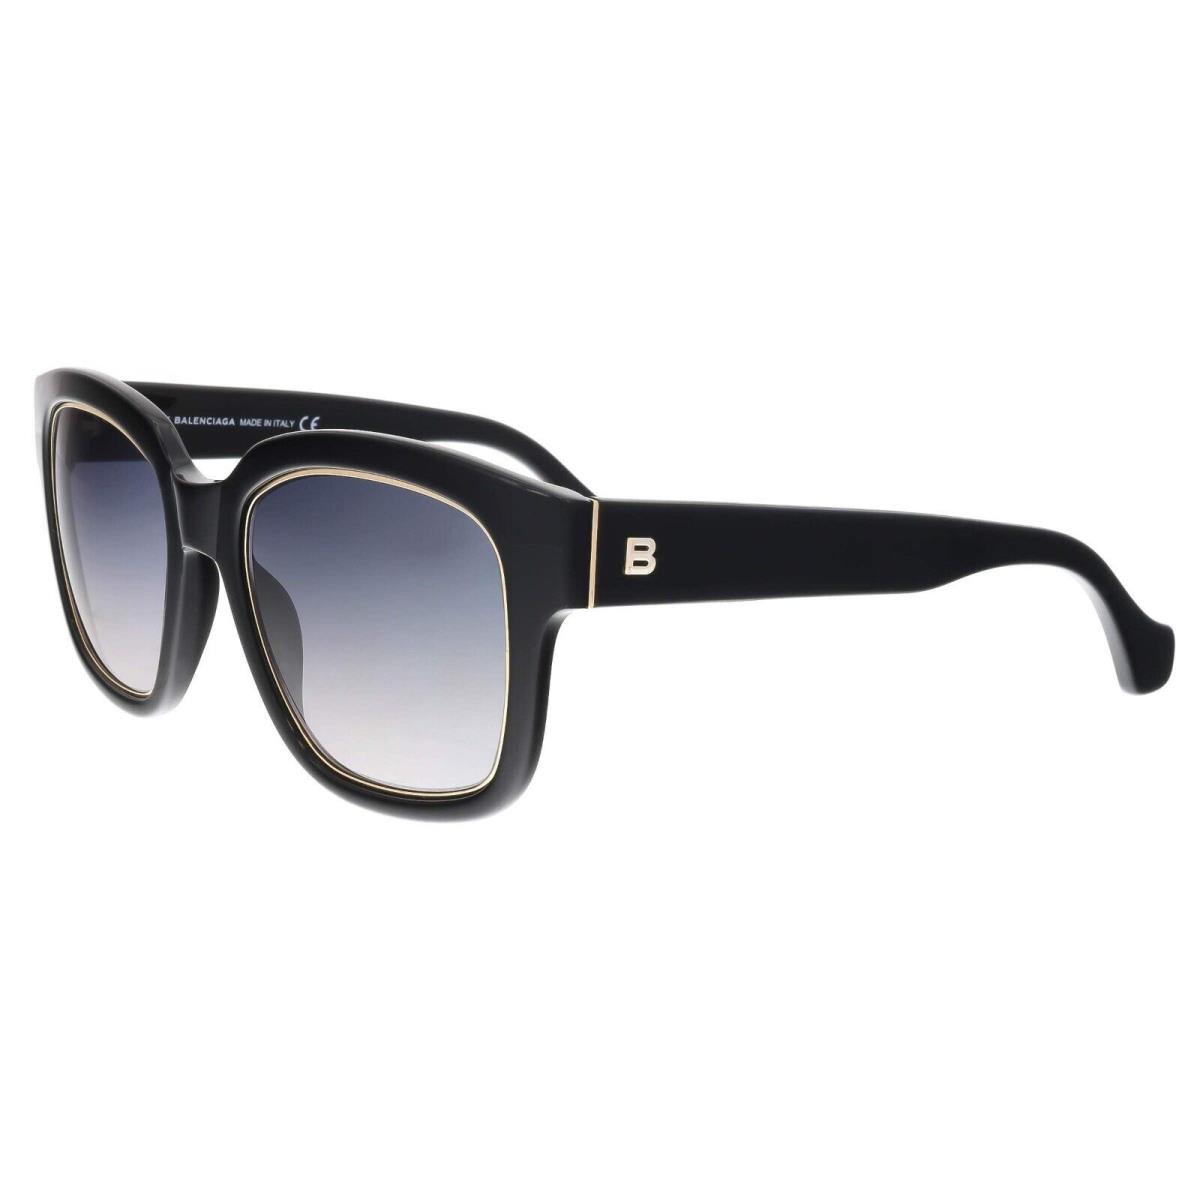 Balenciaga BA50 01B Black Square Gray Gradient Non-polarized 52mm Sunglasses